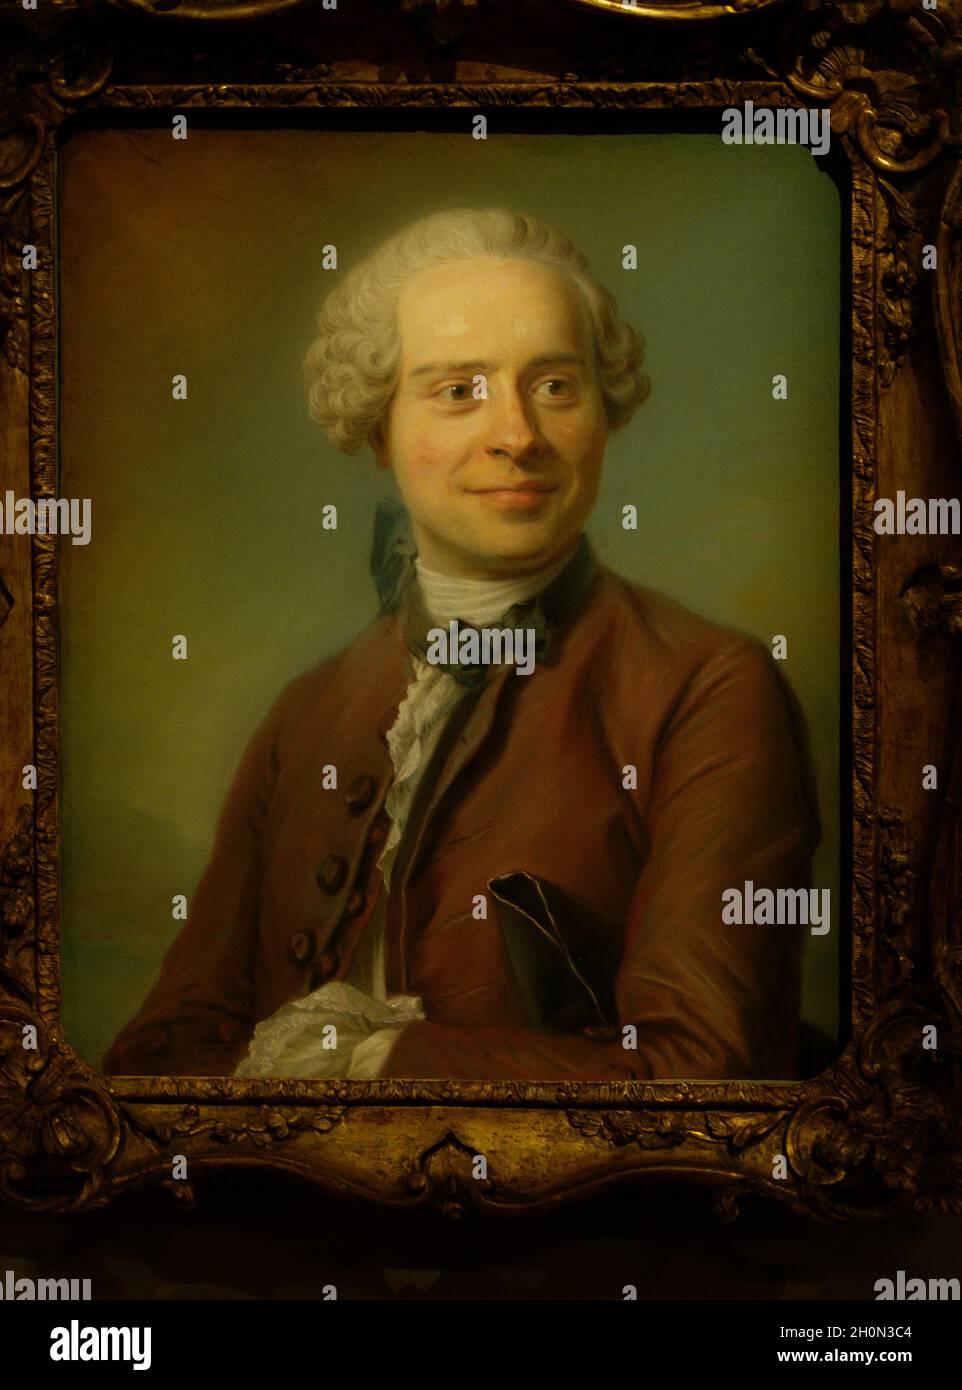 Jean Le Rond d'Alembert 1717-1783 auteur de l'Encyclopédie vers 1752-1753 Stockfoto